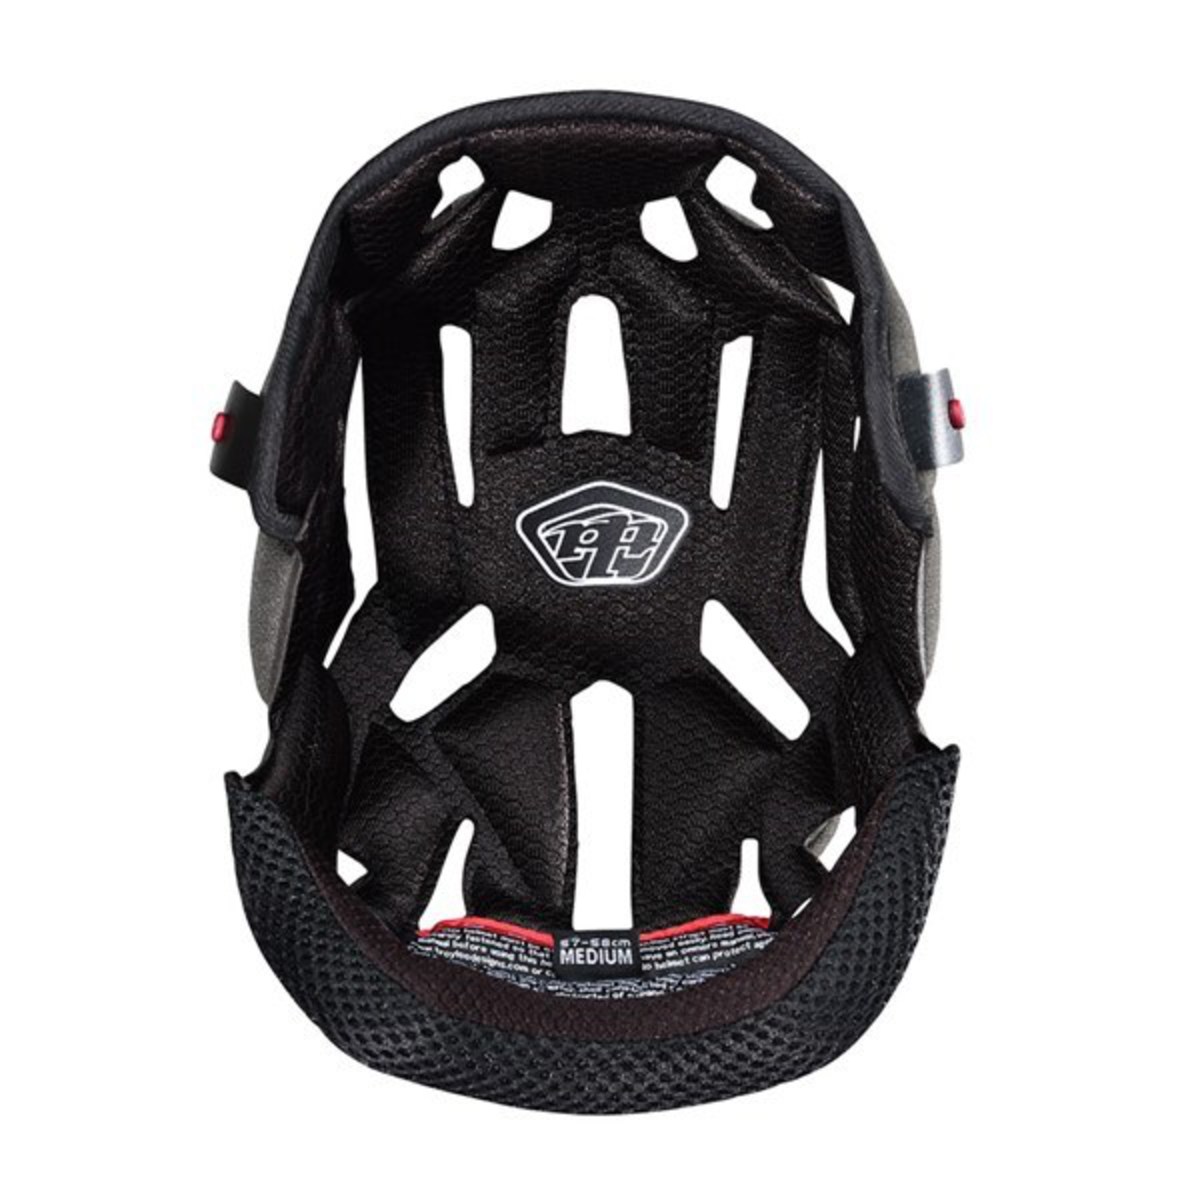 Troy Lee Designs D3 Bicycle Cycle Bike Helmet Replacement Headliner Black 